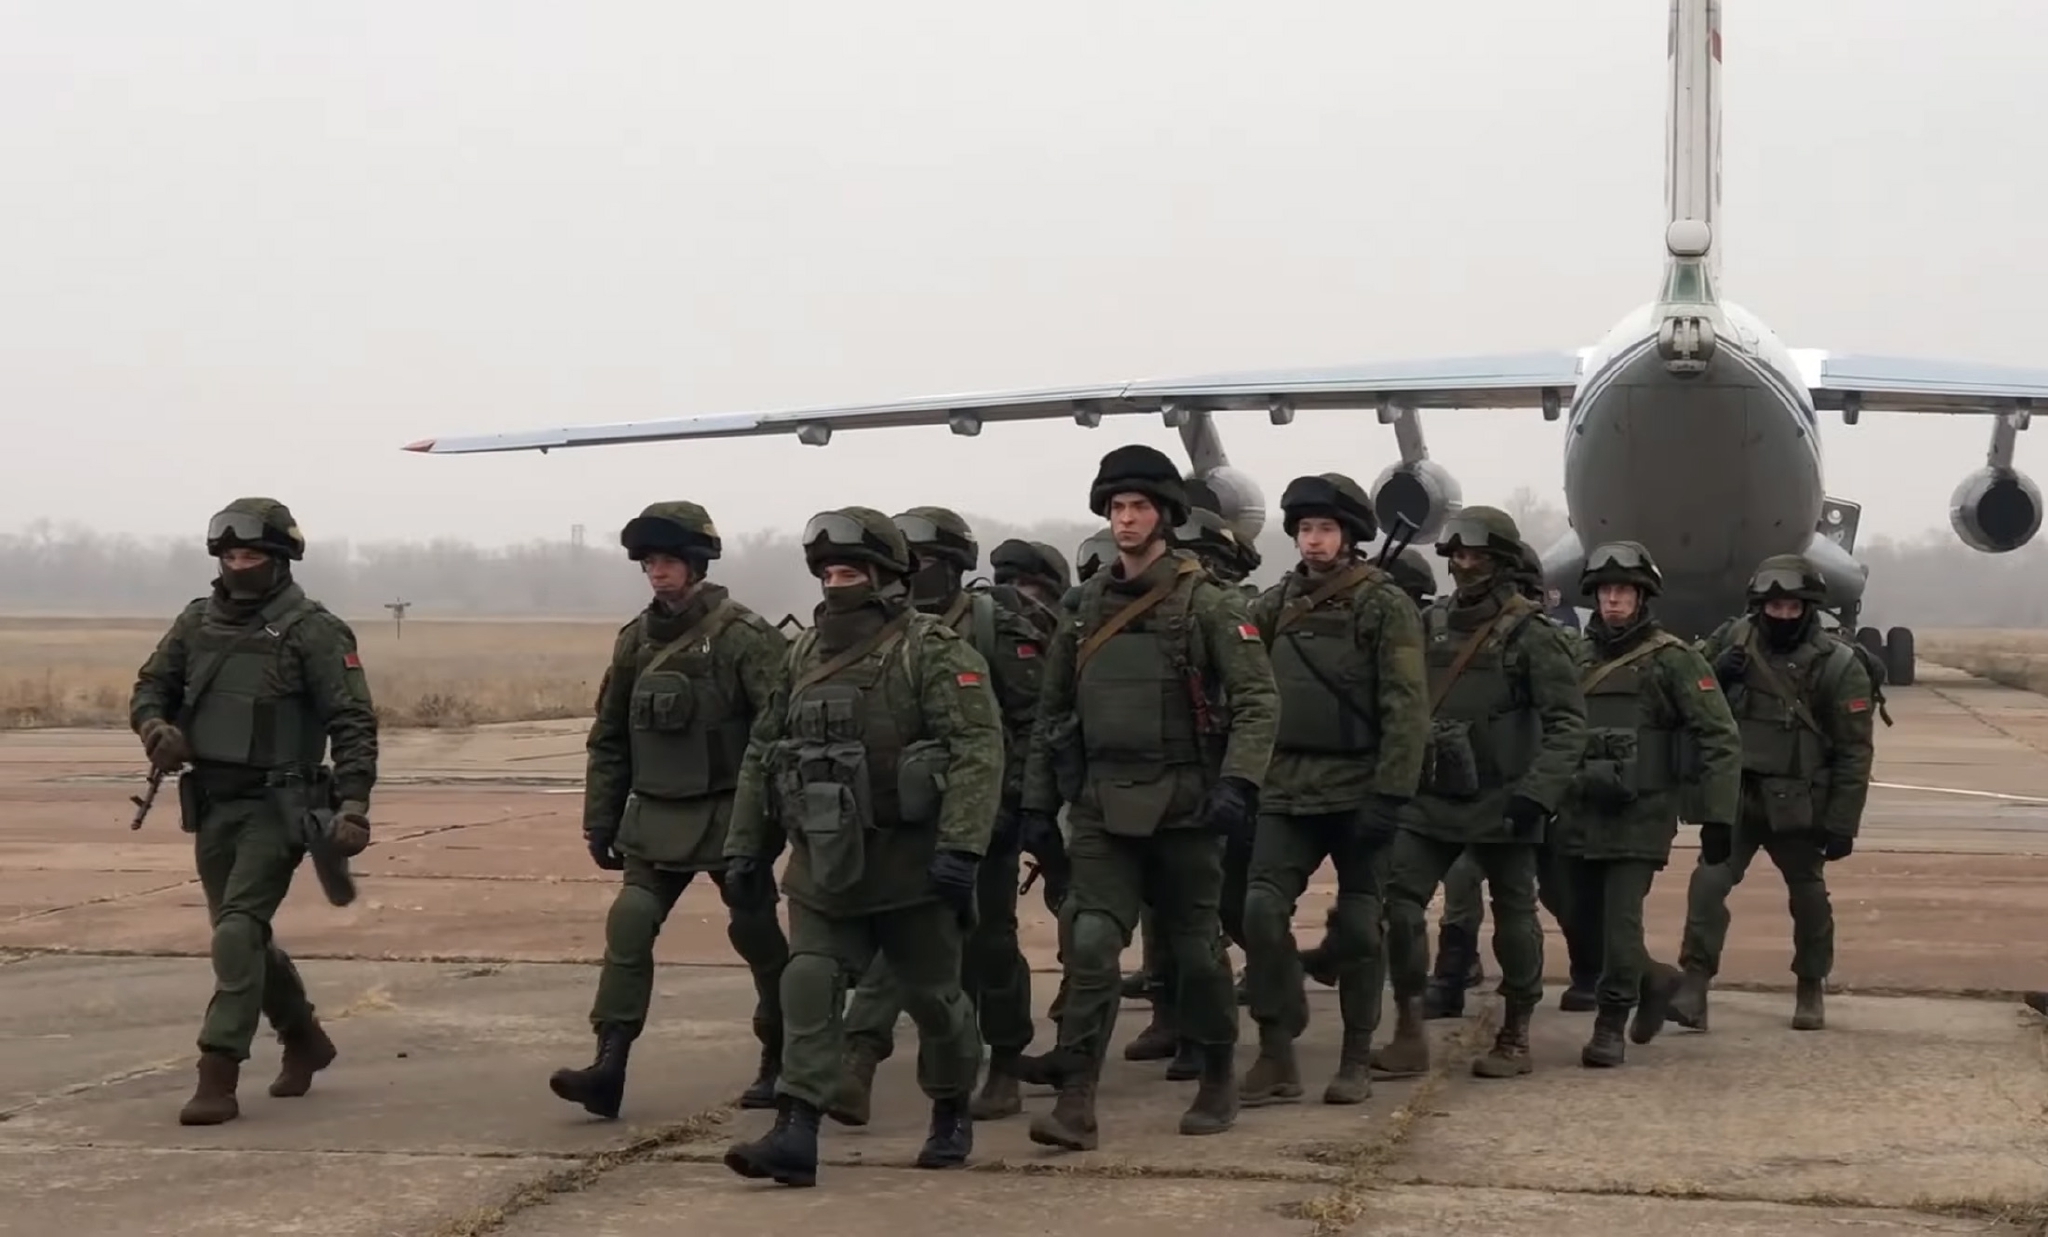 集安组织维和人员抵达哈萨克斯坦 图自澎湃影像